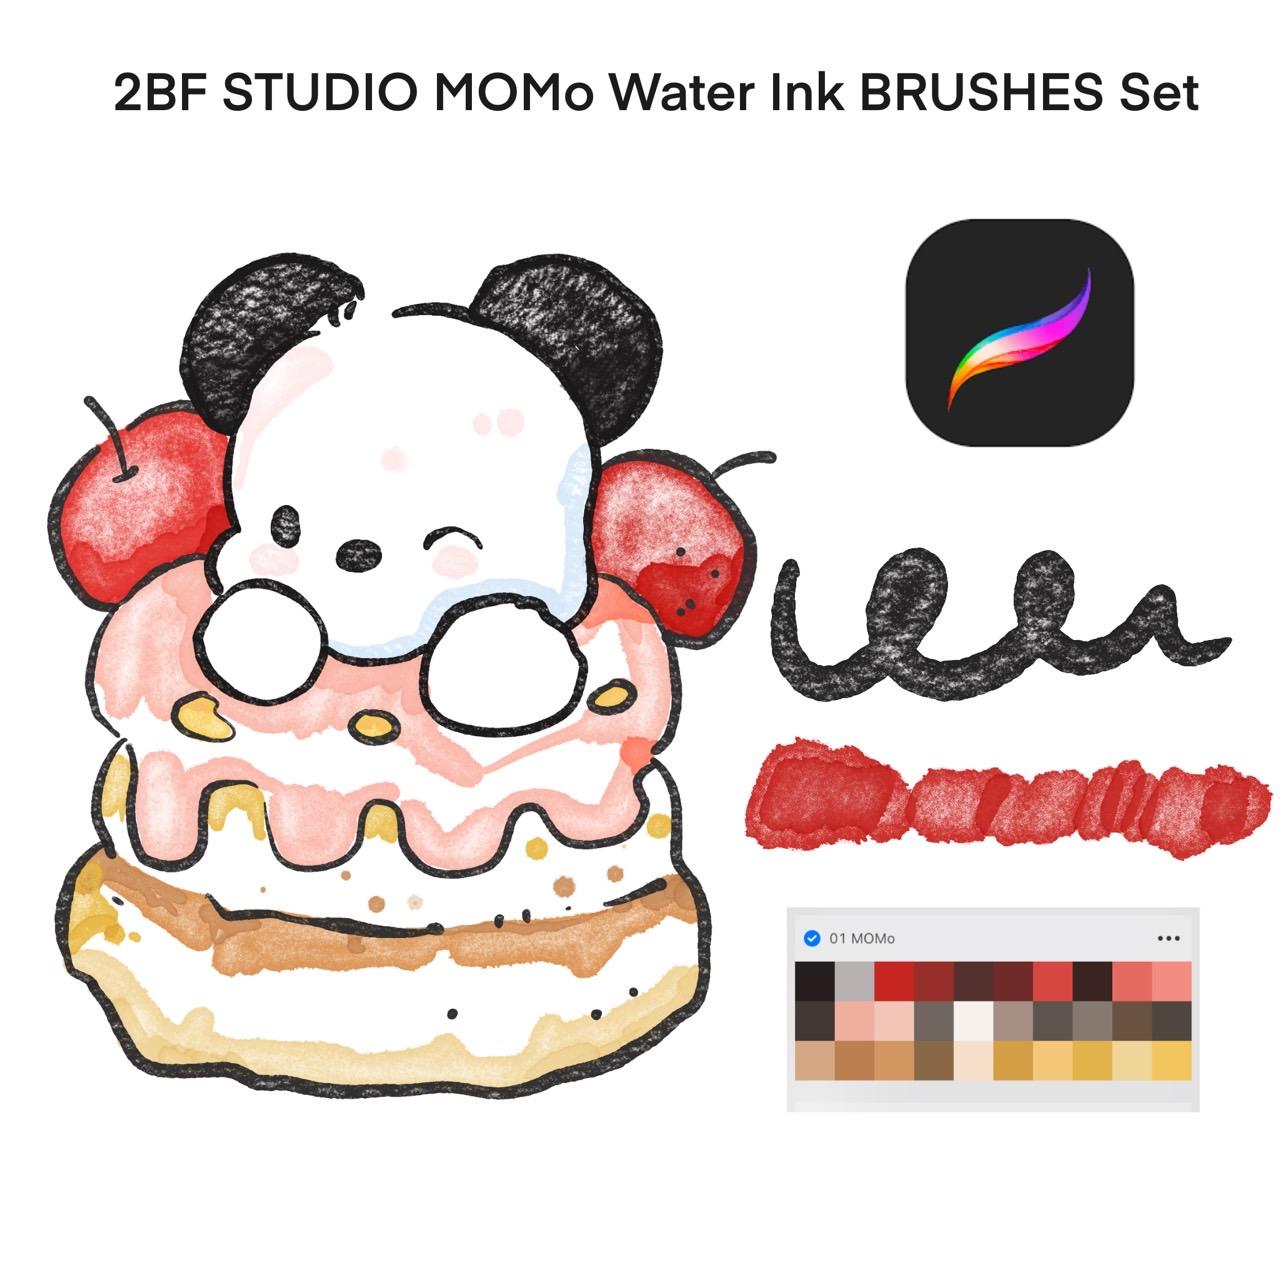 2BF STUDIO MOMo Water Ink BRUSHES Set